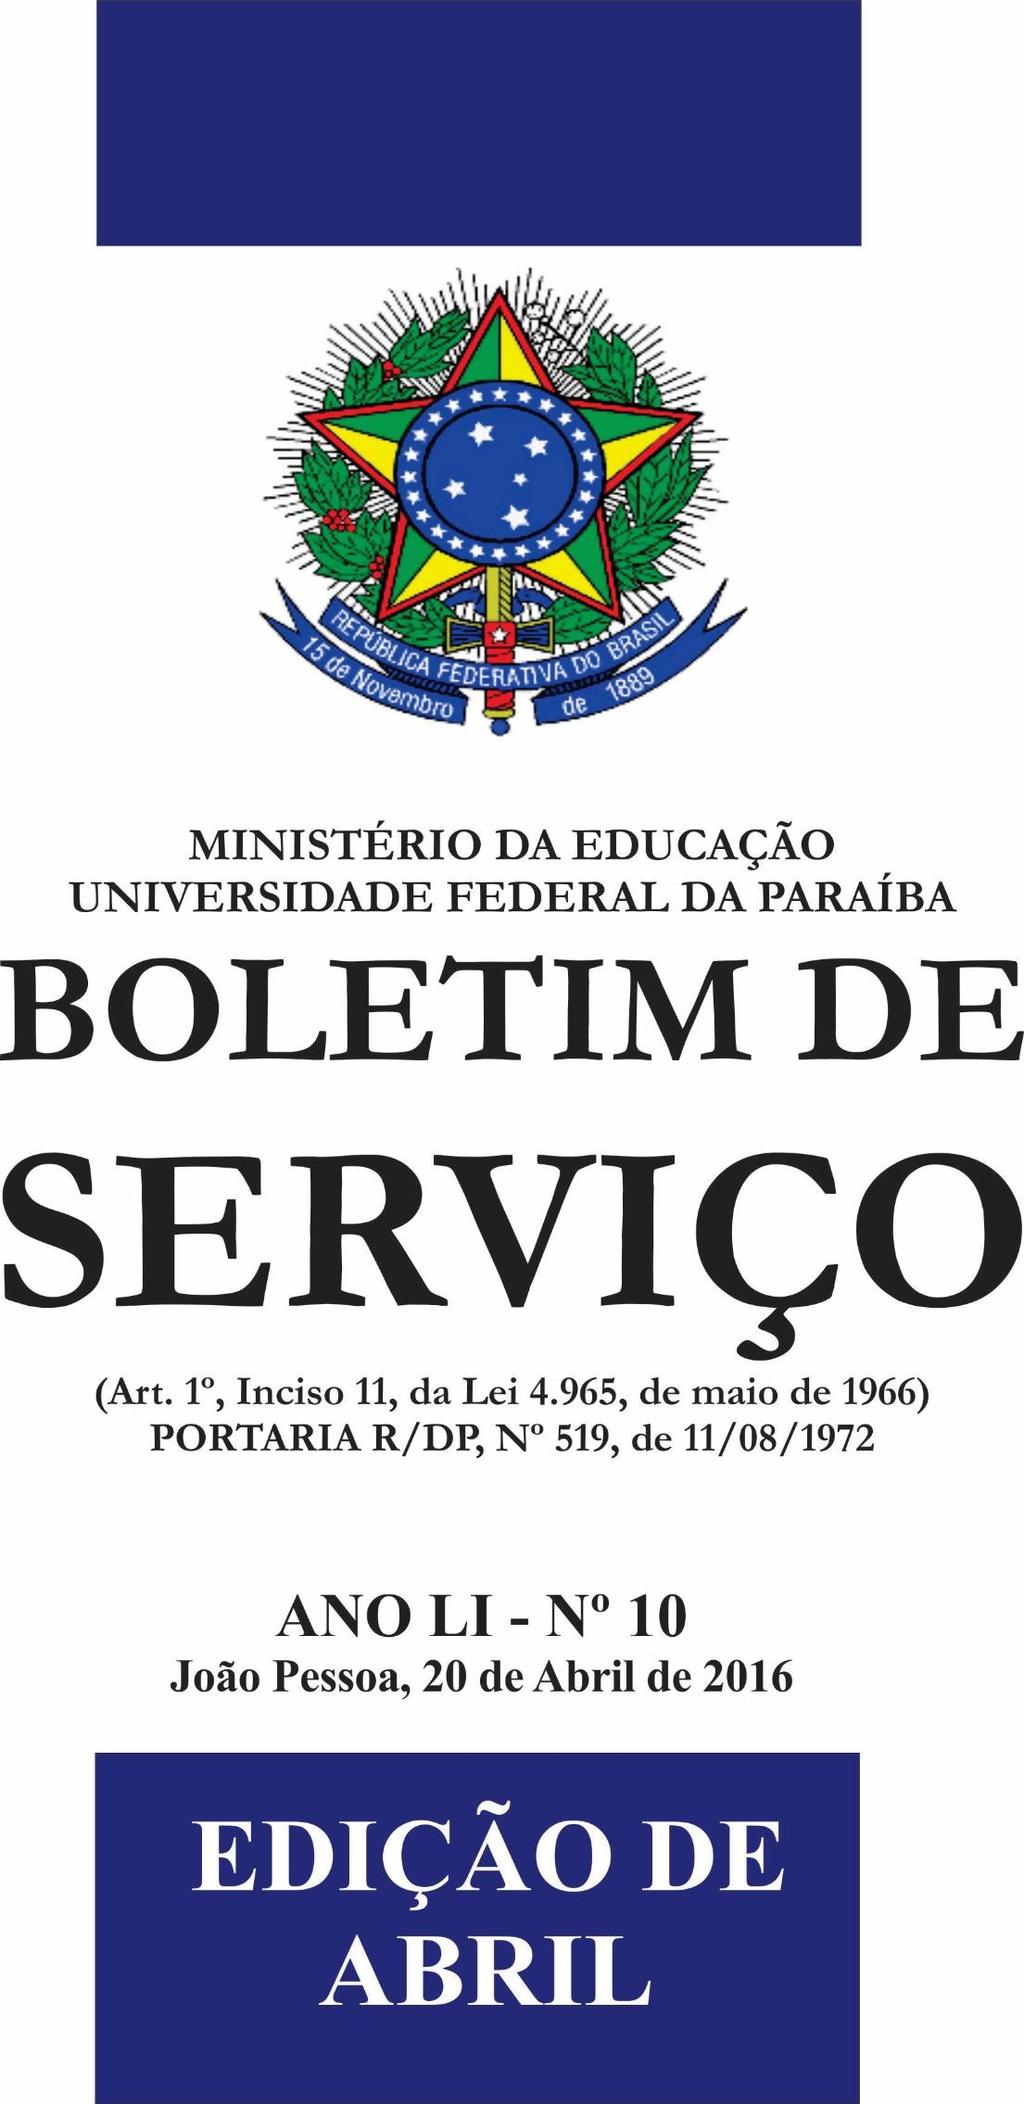 06/05/2019 BOLETIM DE SERVIÇO - Nº 18 PÁGINA 1 ANO